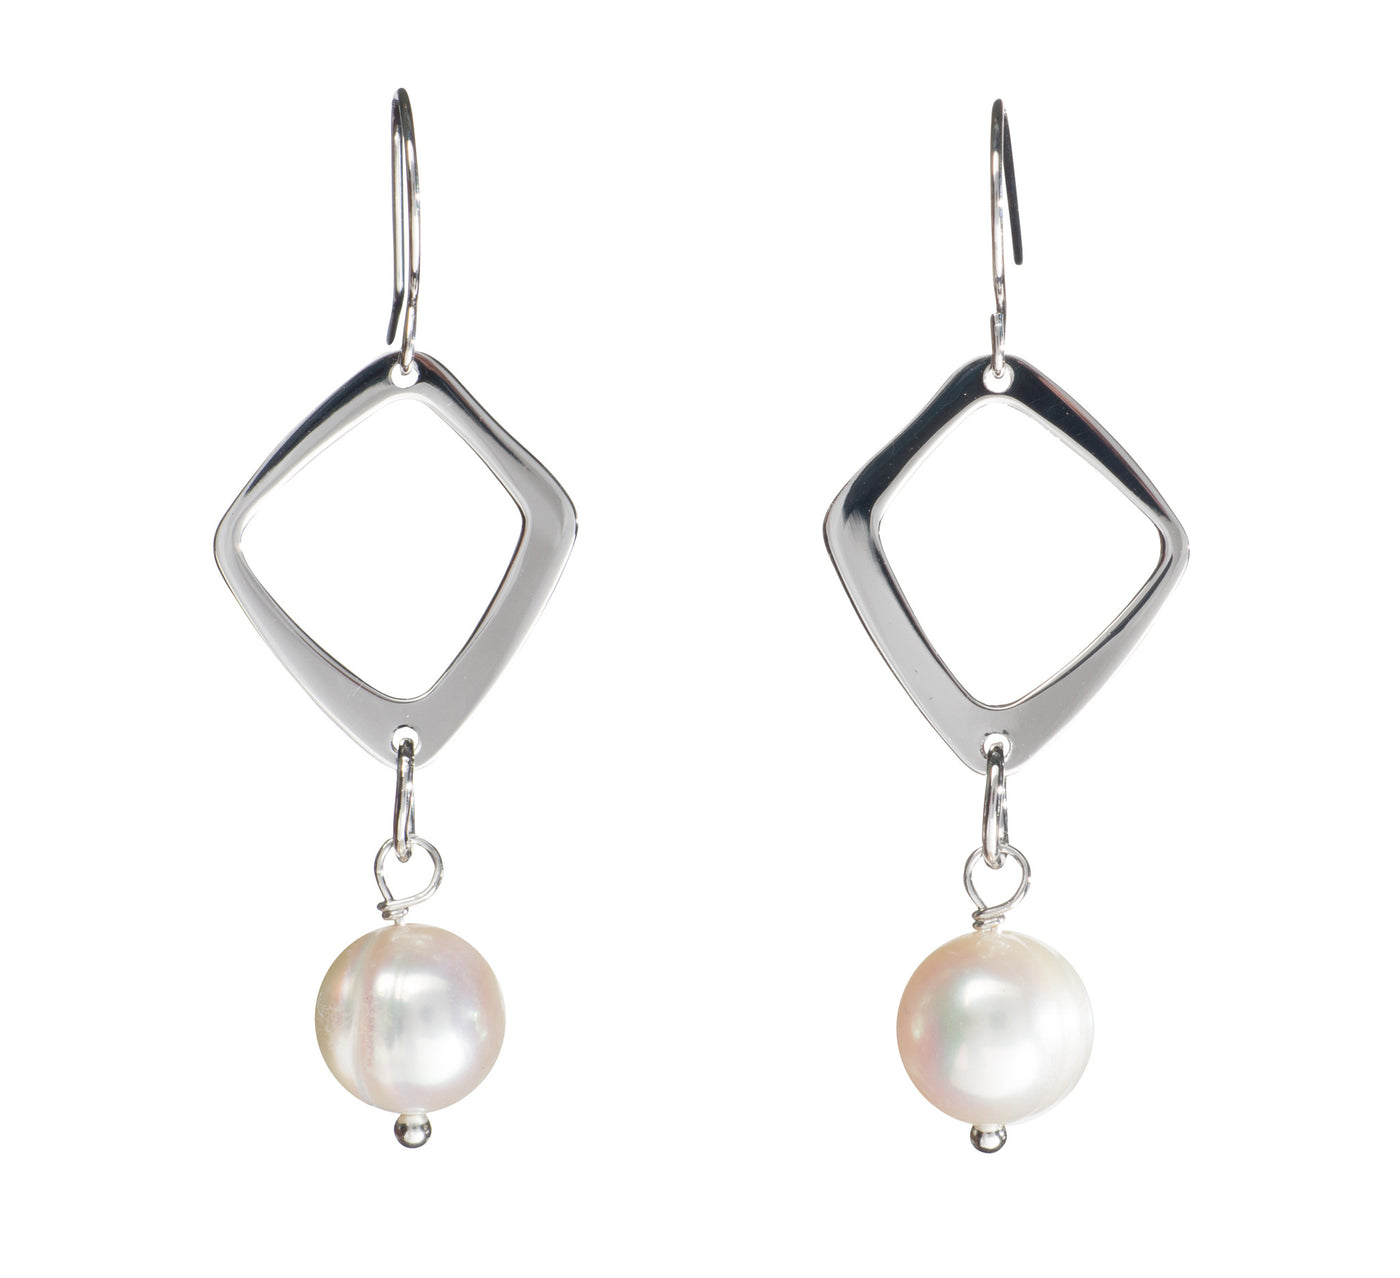 Geo Earrings Earring Pearls by Shari